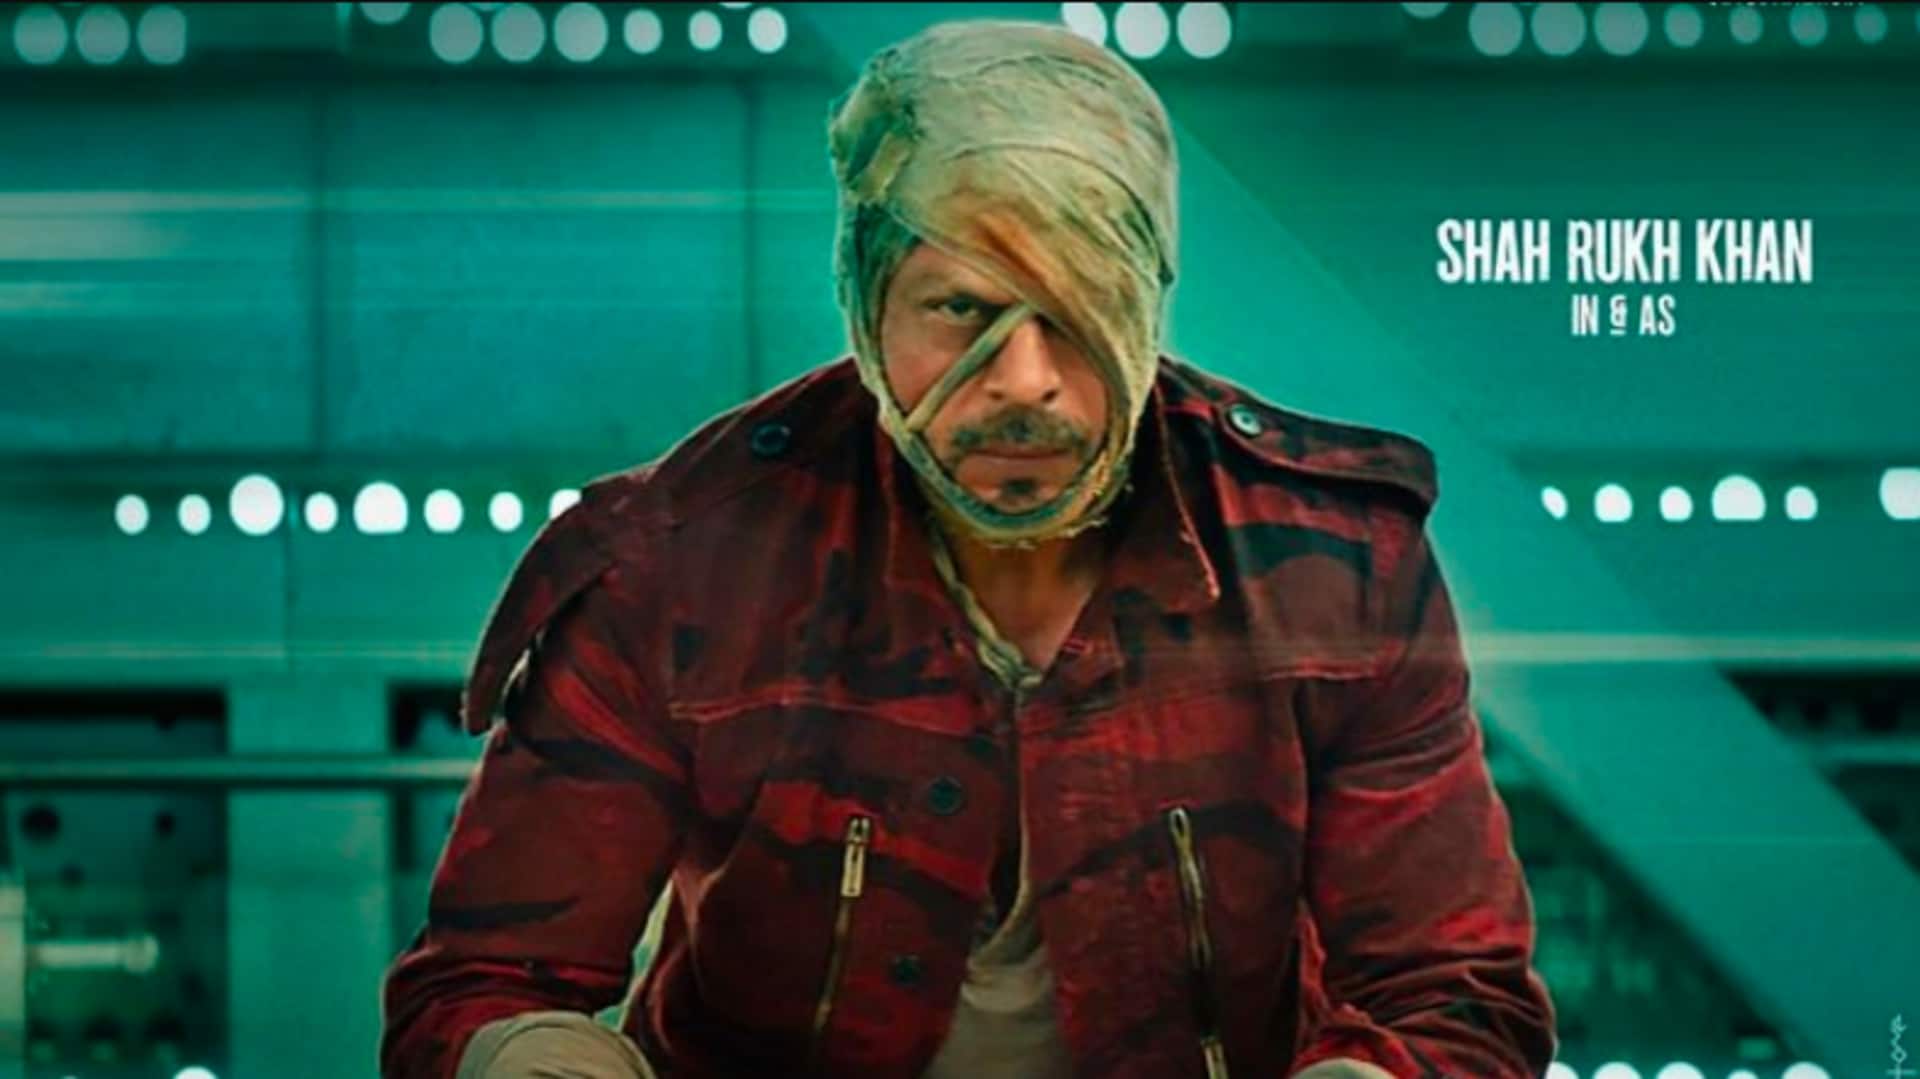 शाहरुख खान की 'जवान' की रिलीज तारीख फिर टली, फिल्म 'आदिपुरुष' पर भी पड़ेगा असर- रिपोर्ट